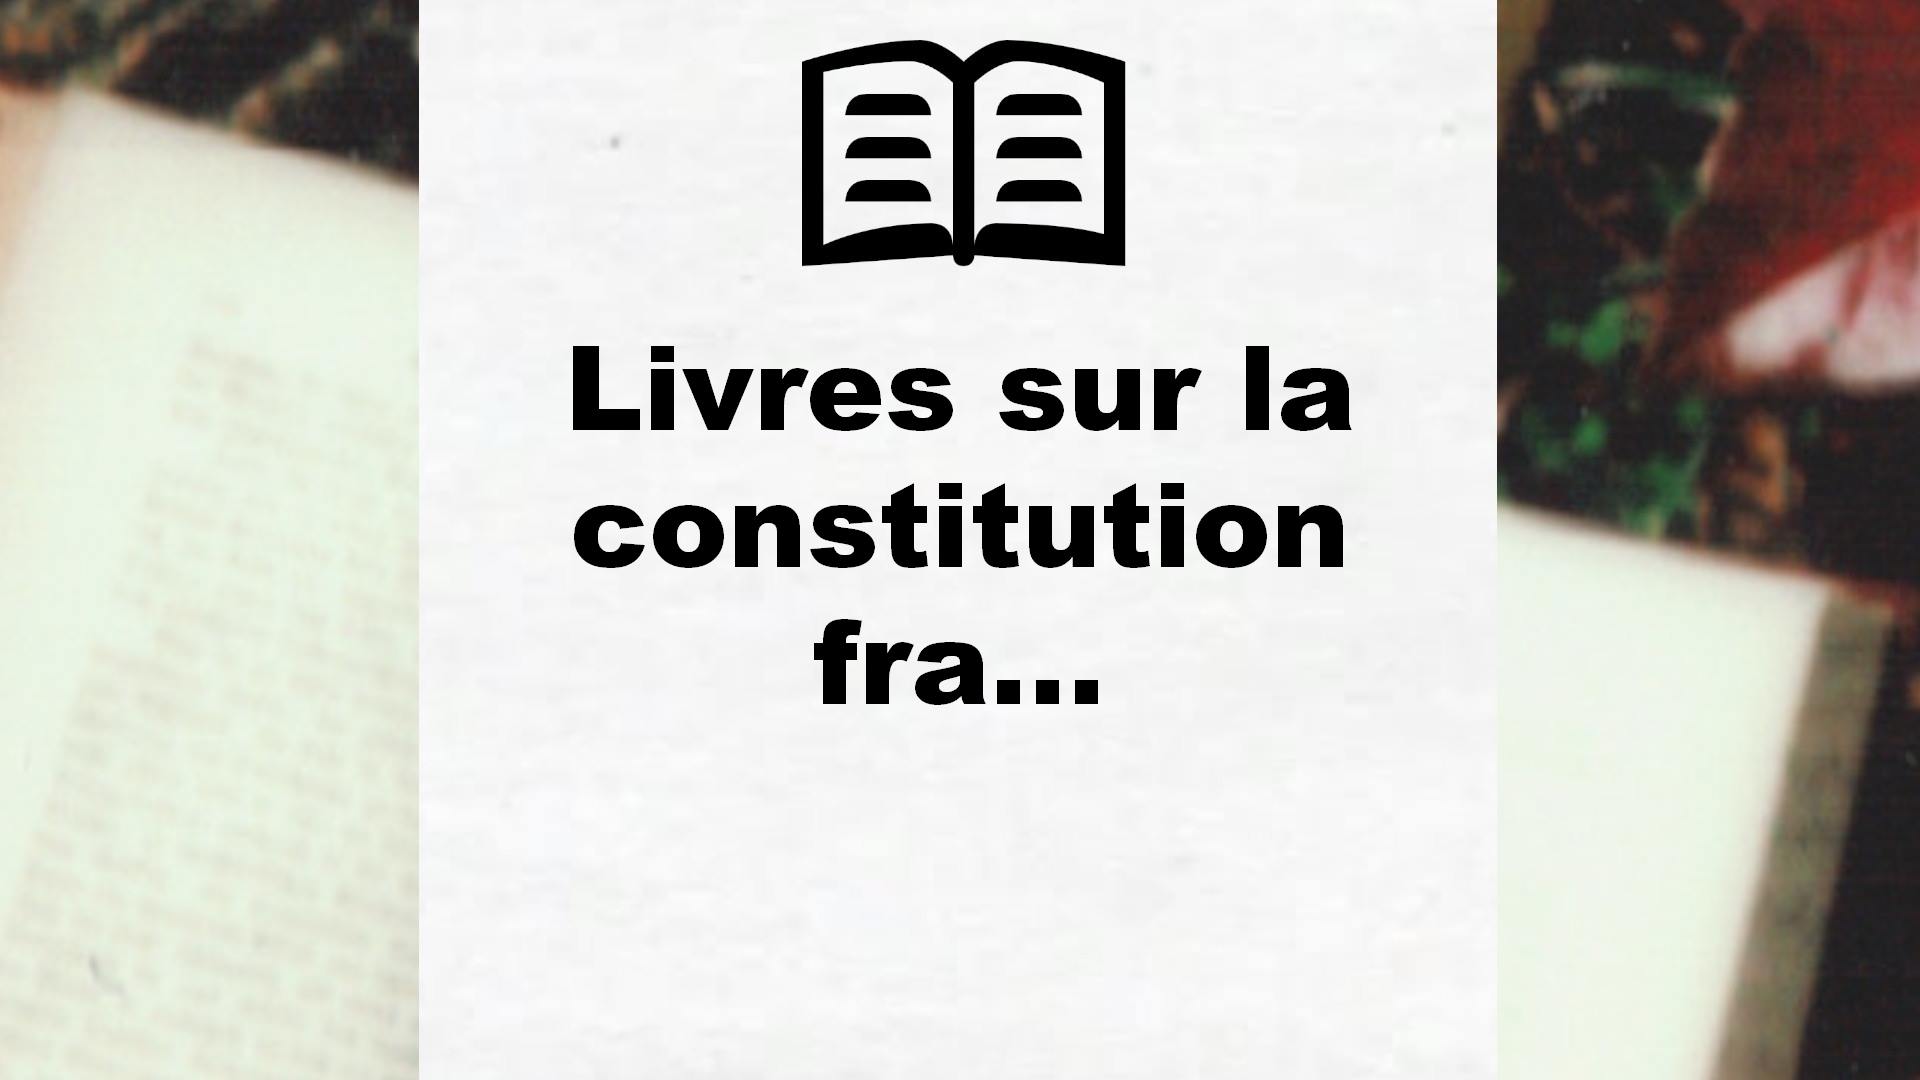 Livres sur la constitution francaise